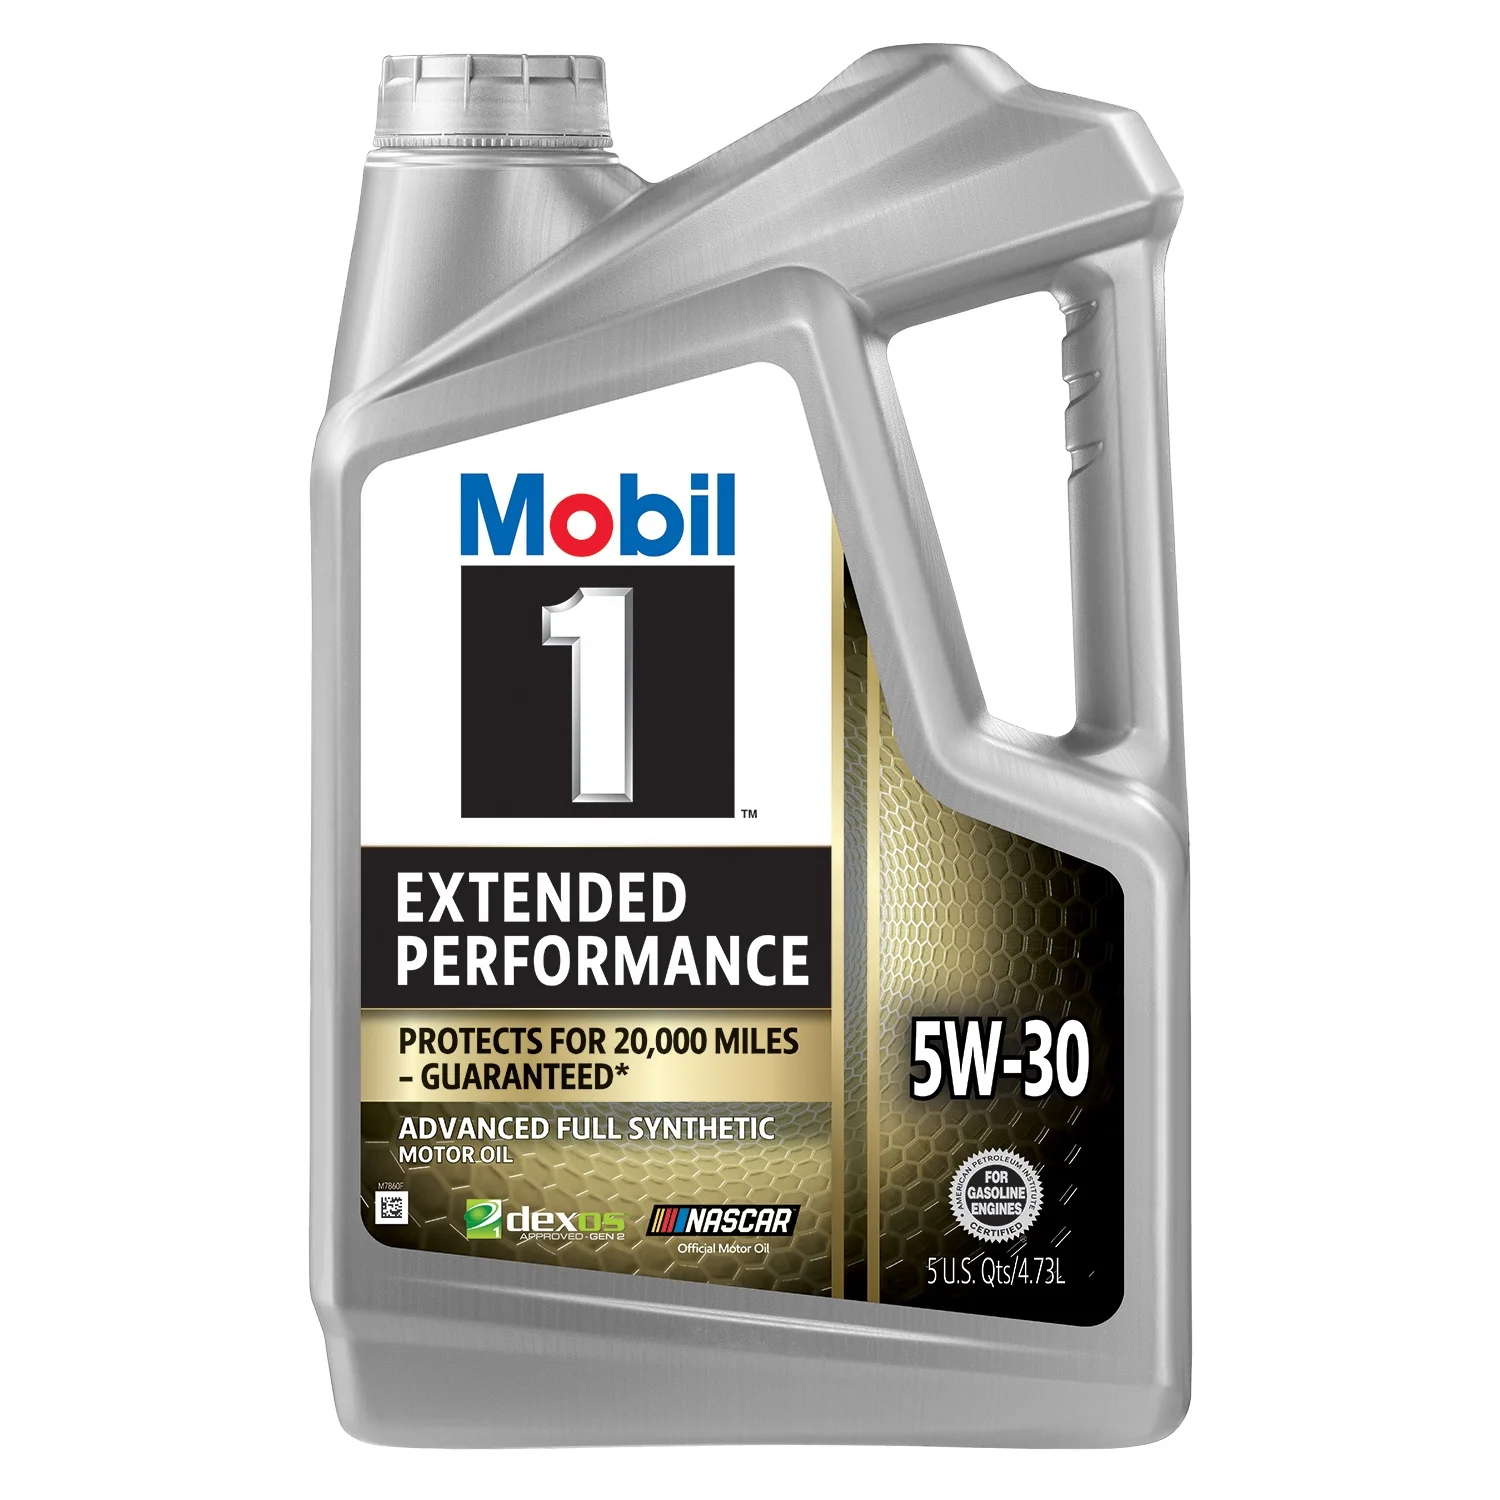 موبيل 1 5W30 Extended Performance Synthetic Motor Oil – 5 Quart (Pack of 3)